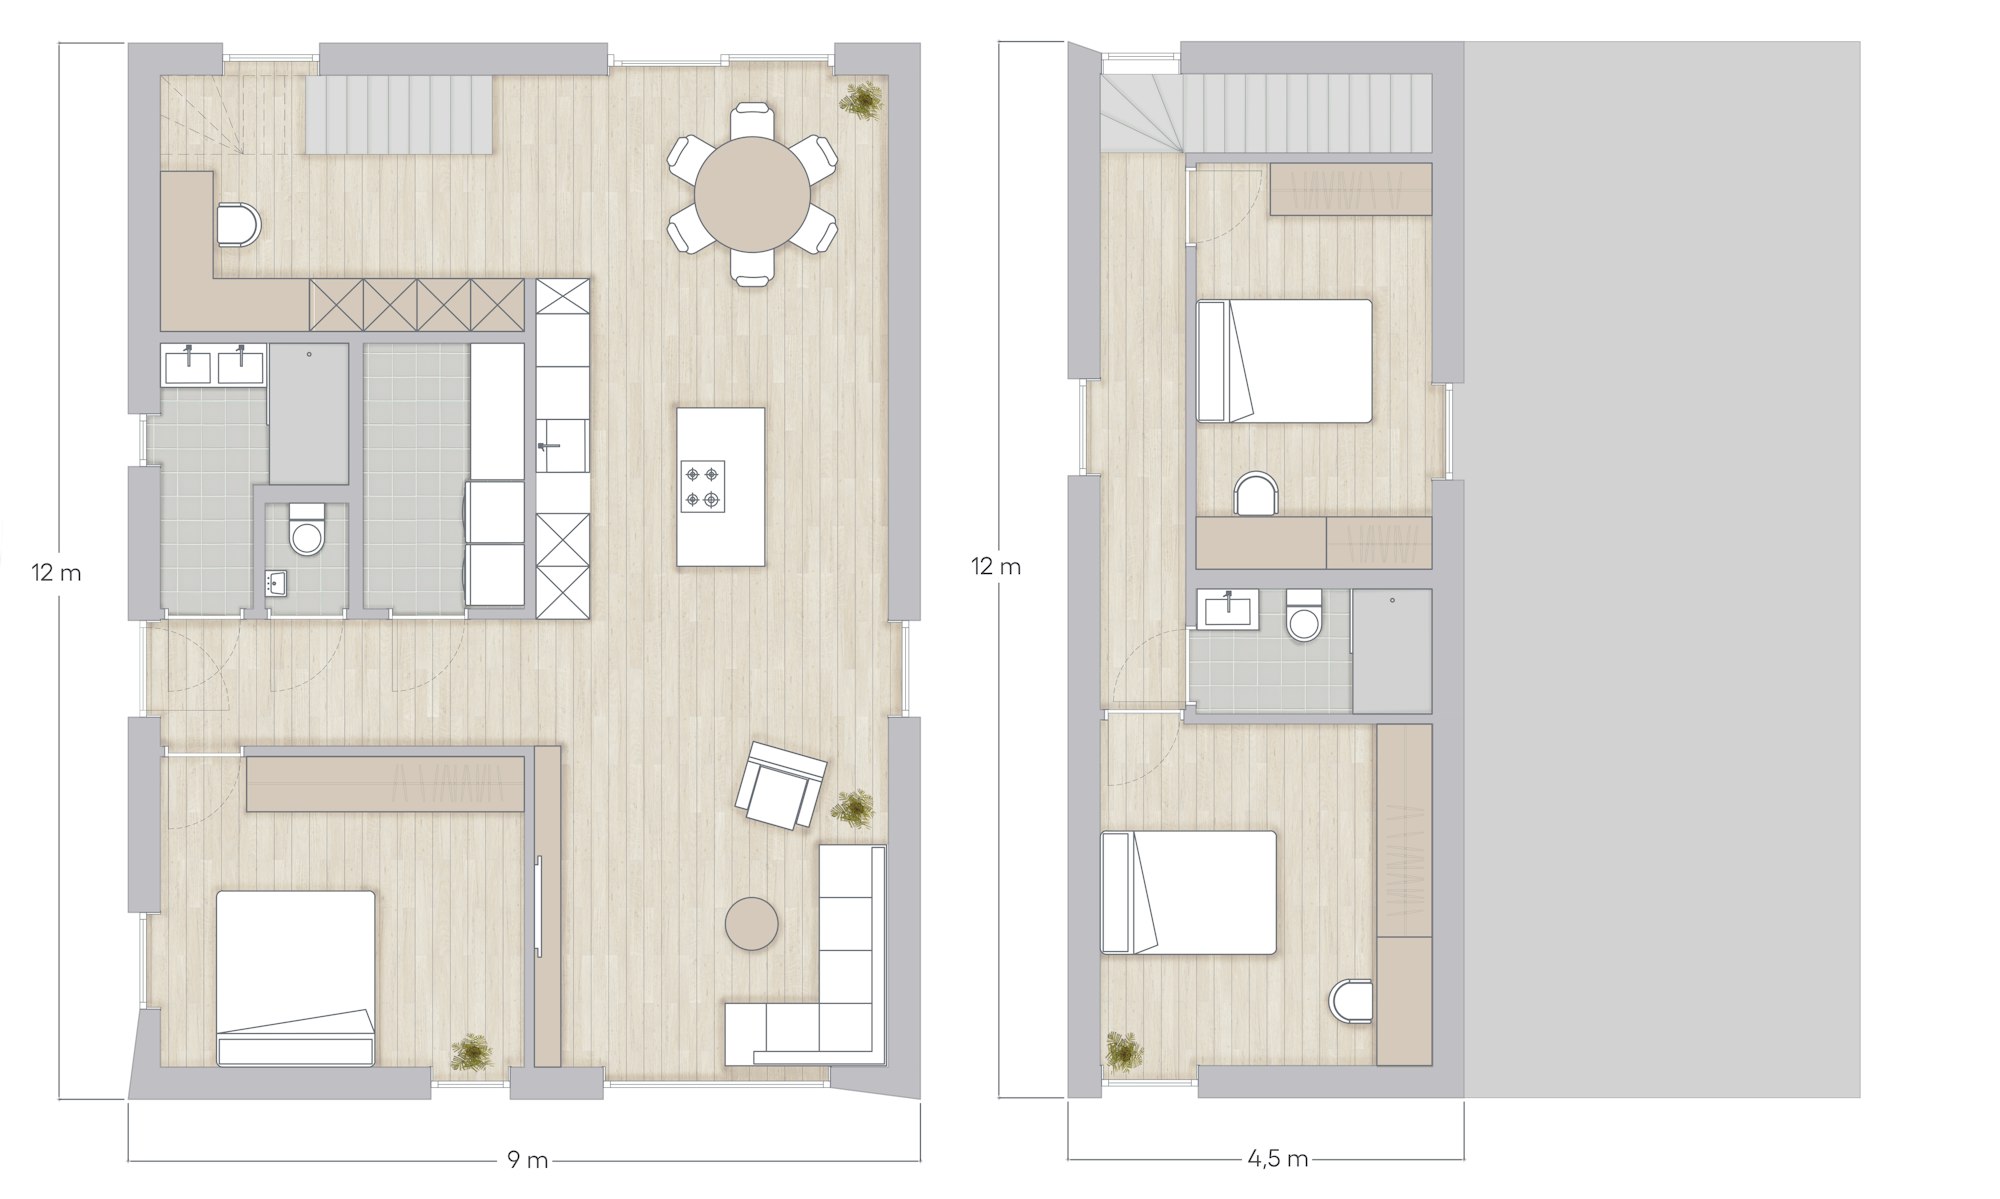 Plan Skilpod #160, 3 slaapkamers over twee verdiepingen